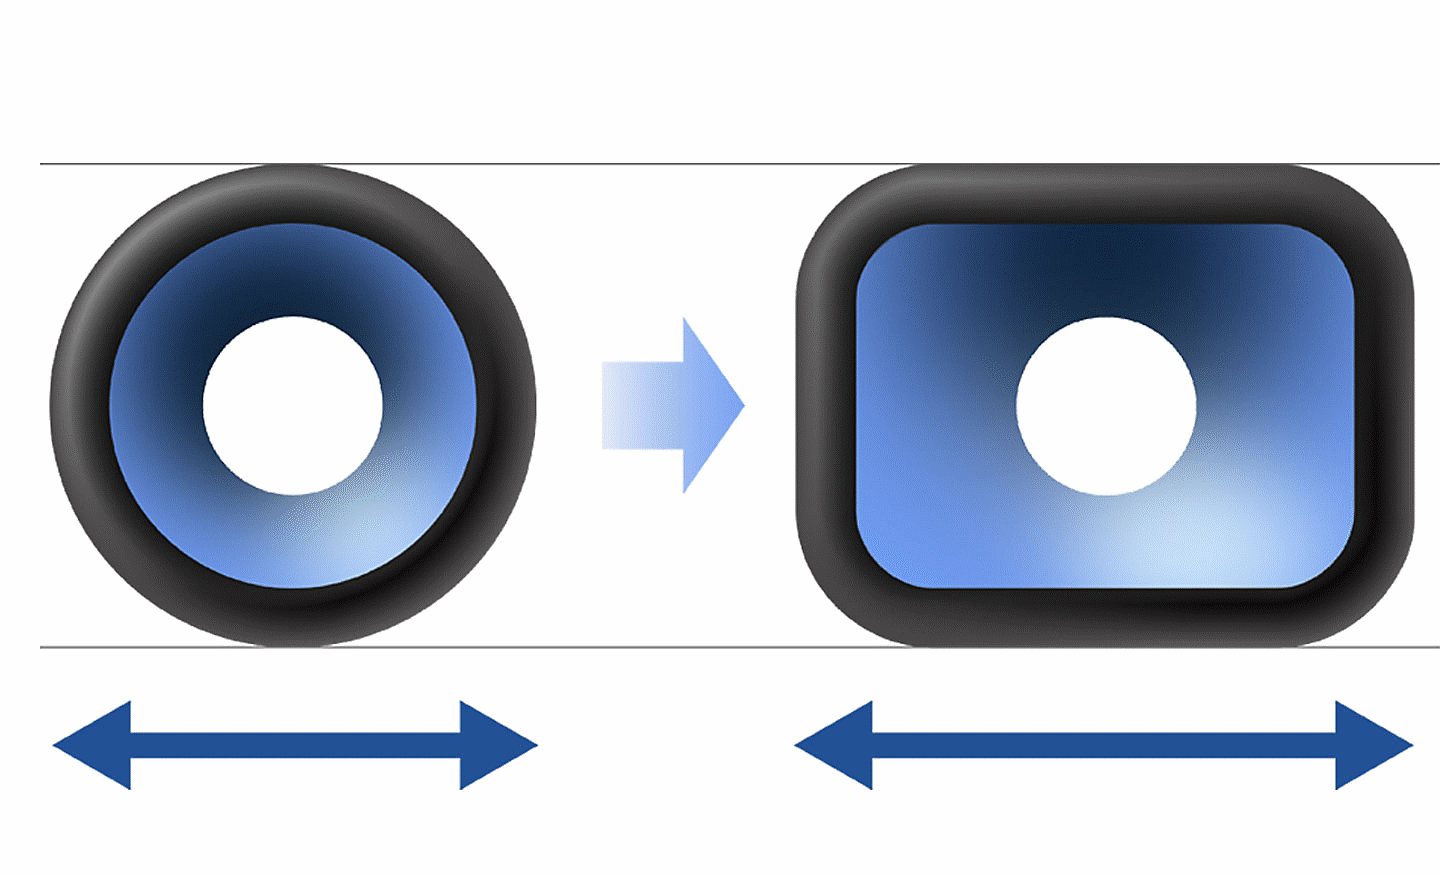 Slika okroglega zvočnika na levi in pravokotnega zvočnika na desni s puščico, ki je v sredini usmerjen z leve proti desni